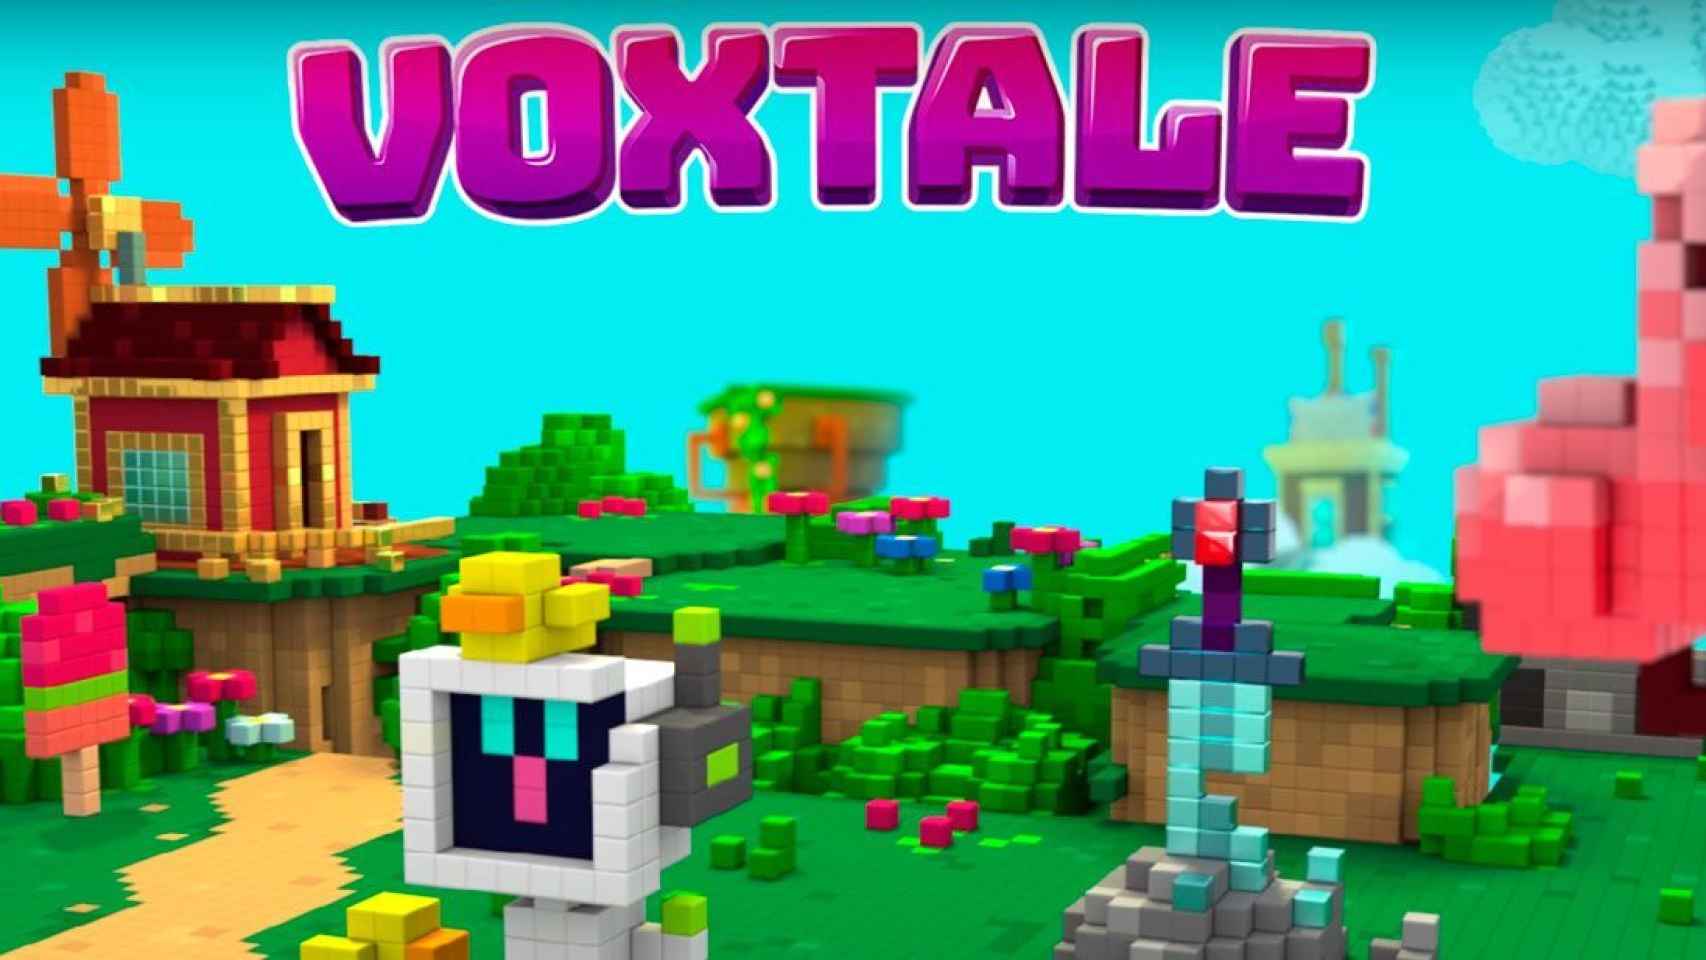 Voxtale nos recuerda a Minecraft: cubos por doquier en este nuevo juego